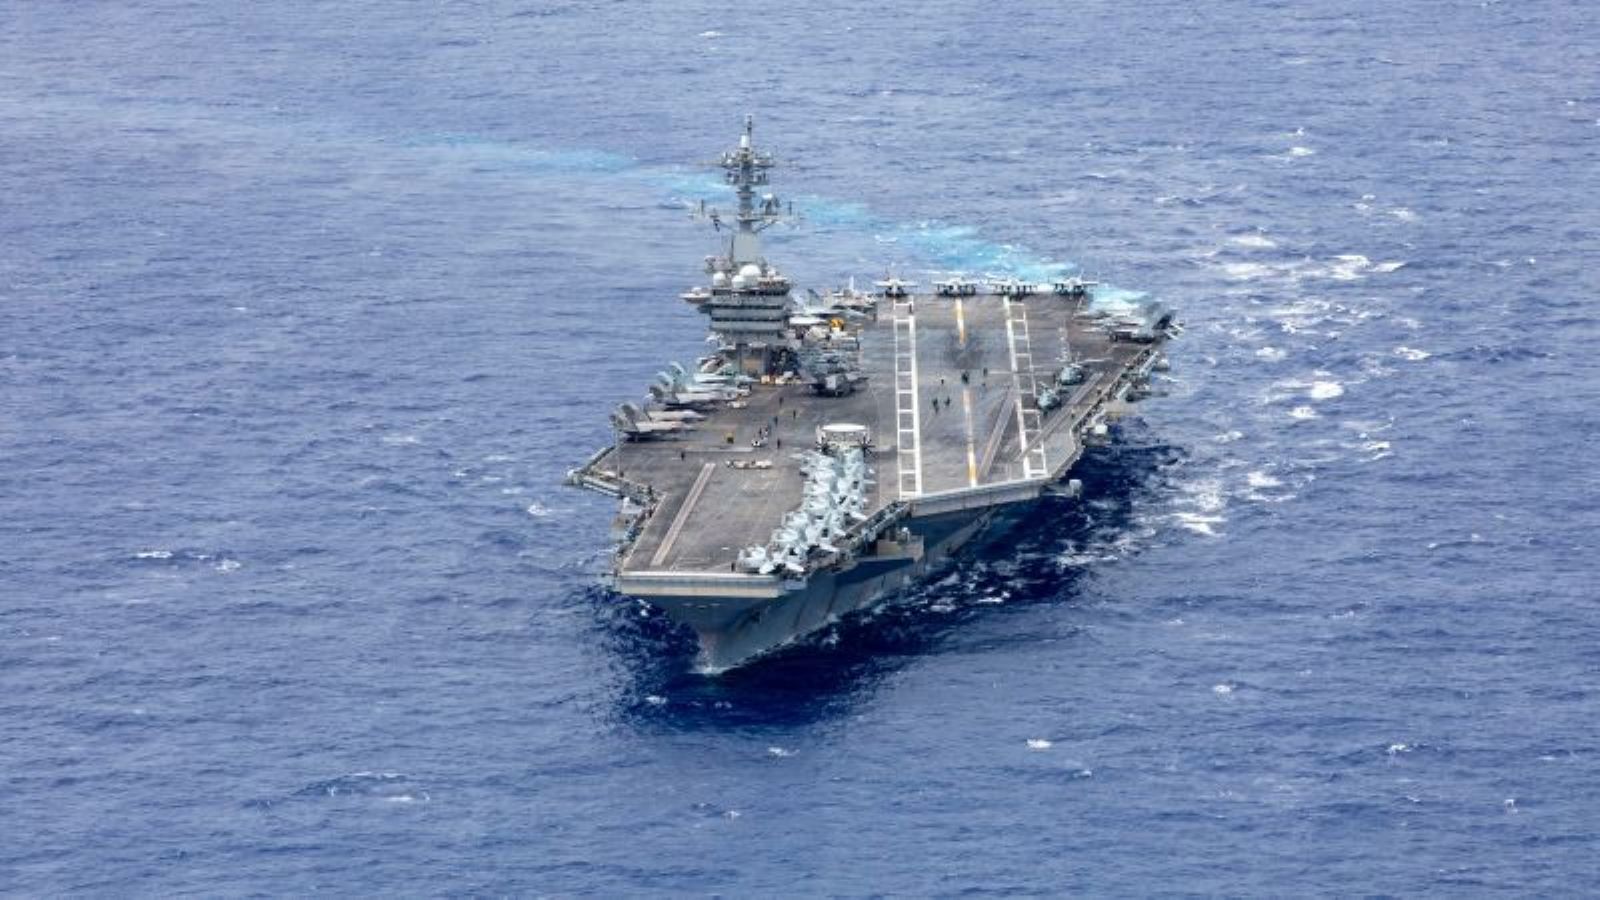 EE.UU. envía un portaaviones, buques de guerra y un escuadrón de cazas a Medio Oriente mientras la región se prepara para las represalias iraníes